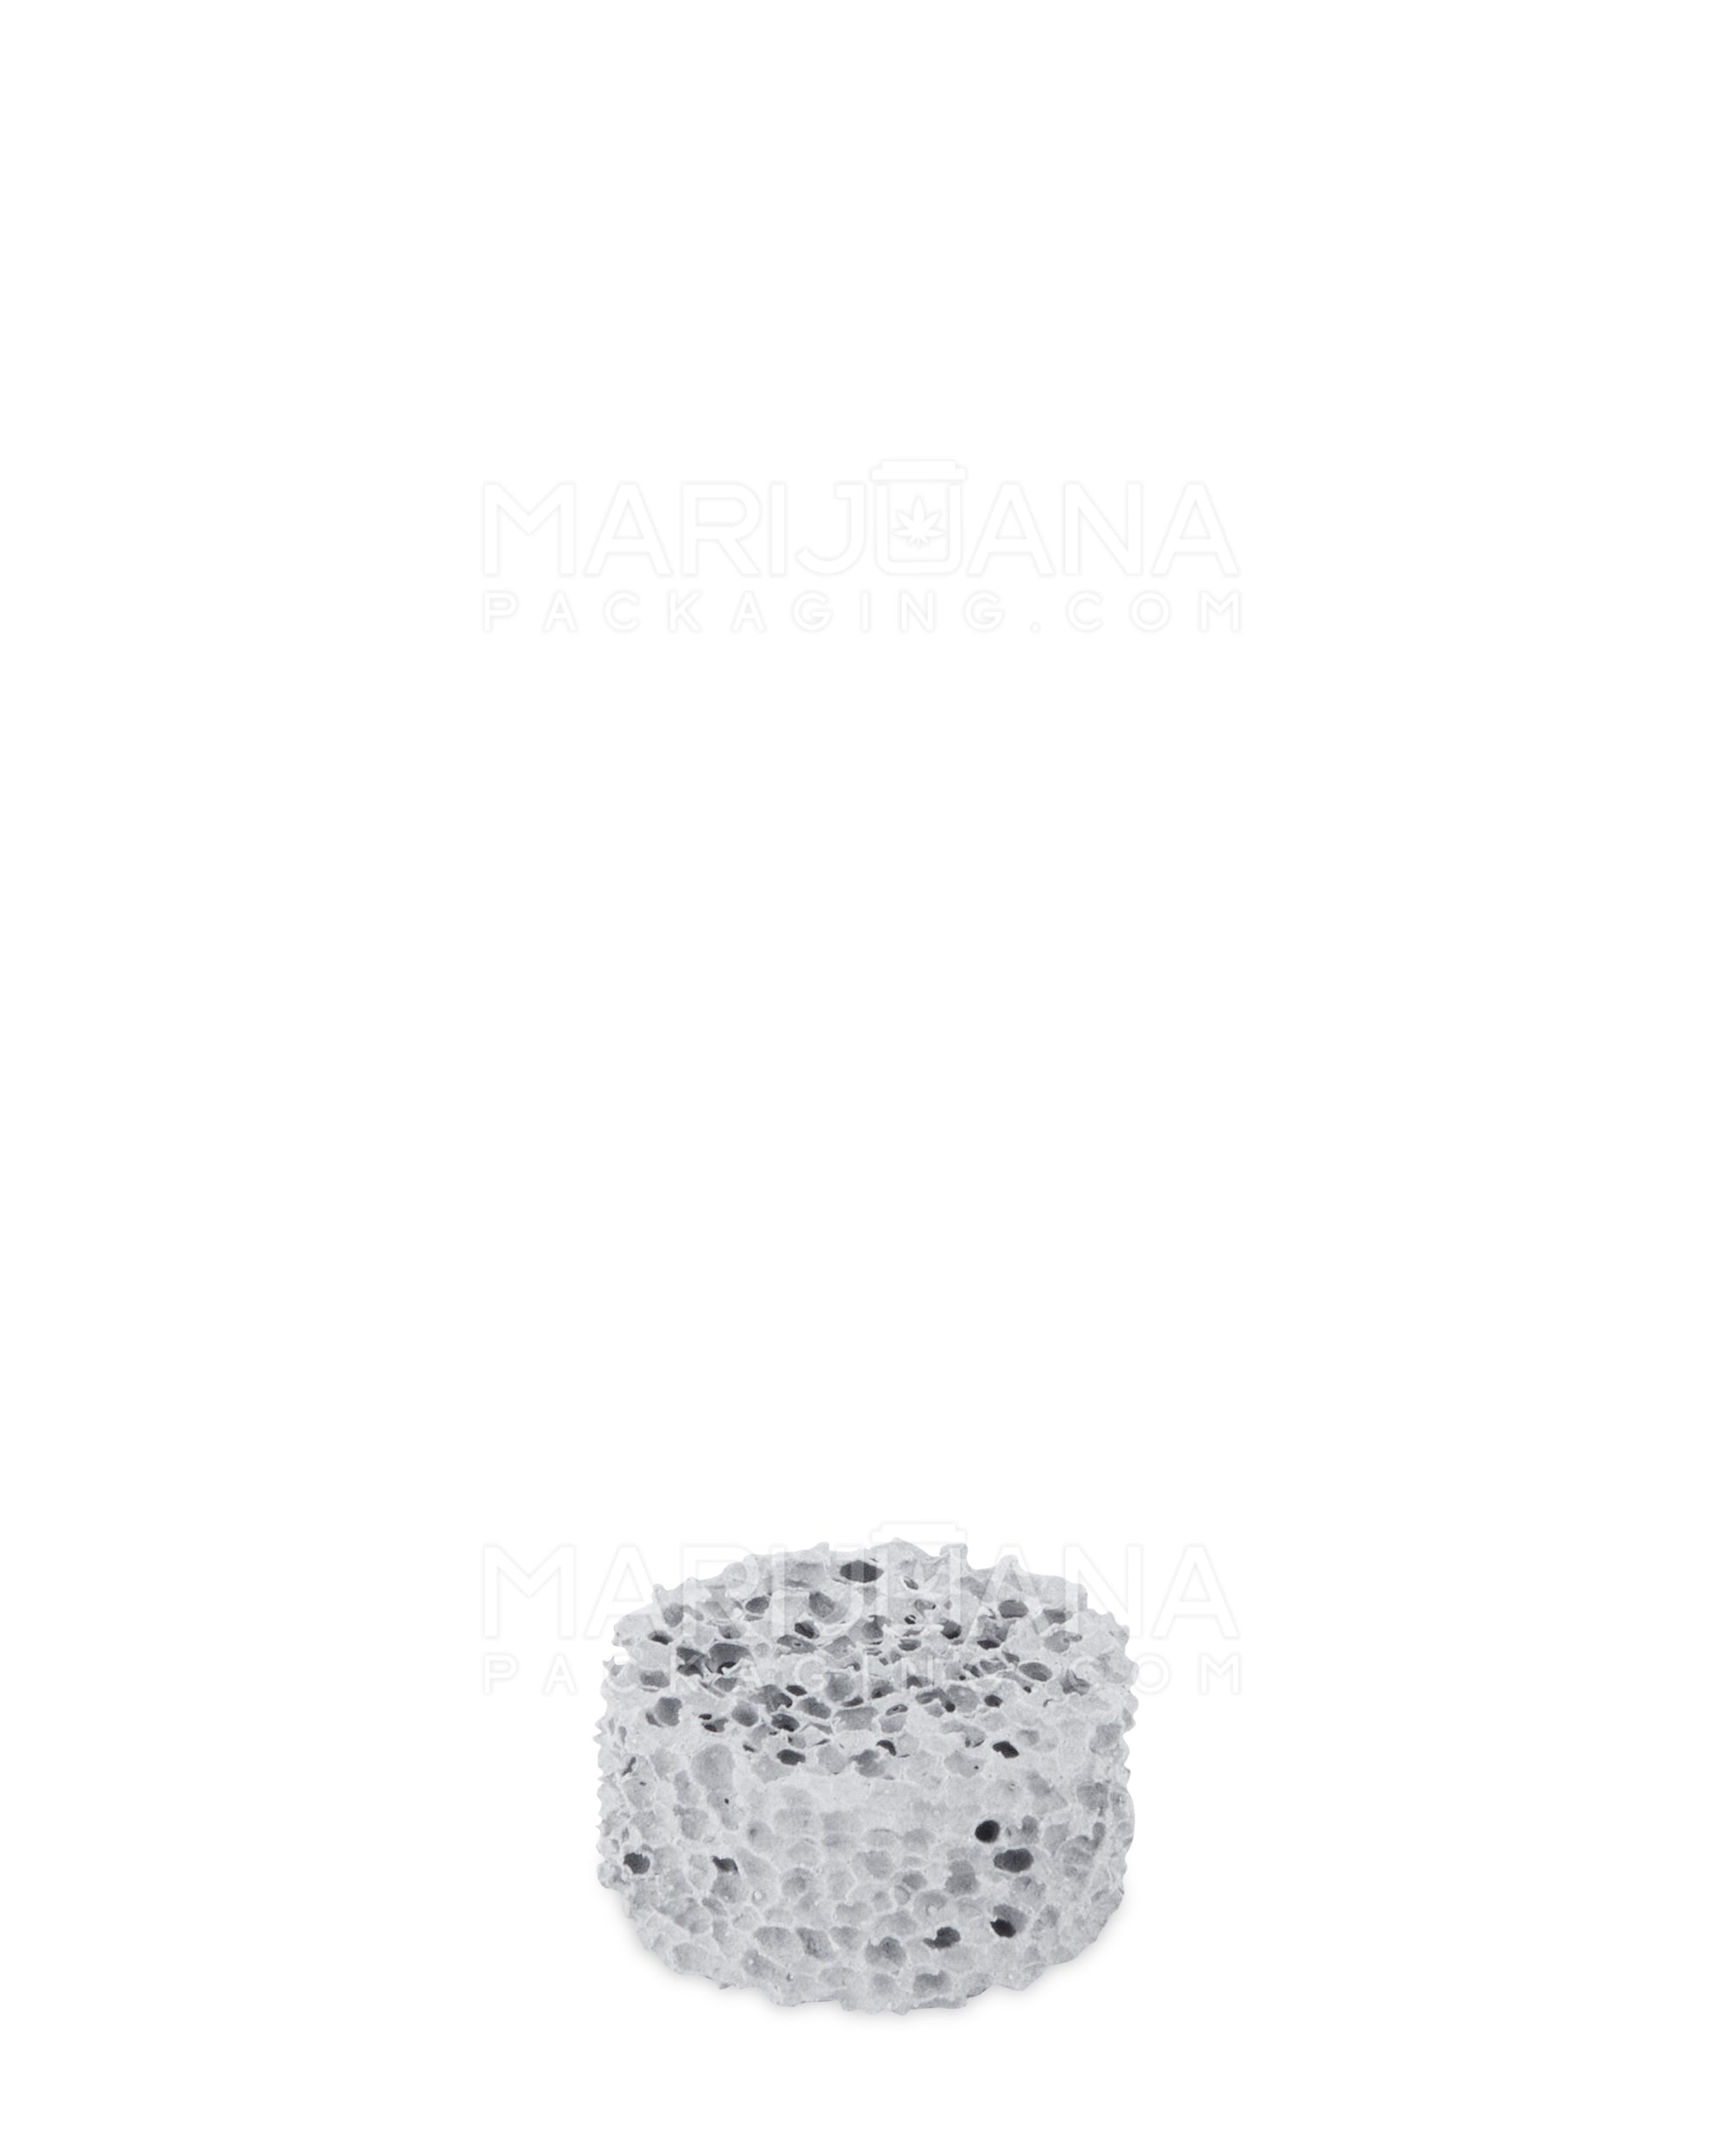 GENIUS PIPE | G Stone Dab Sponge | 11.5mm Diameter - Ceramic - 1